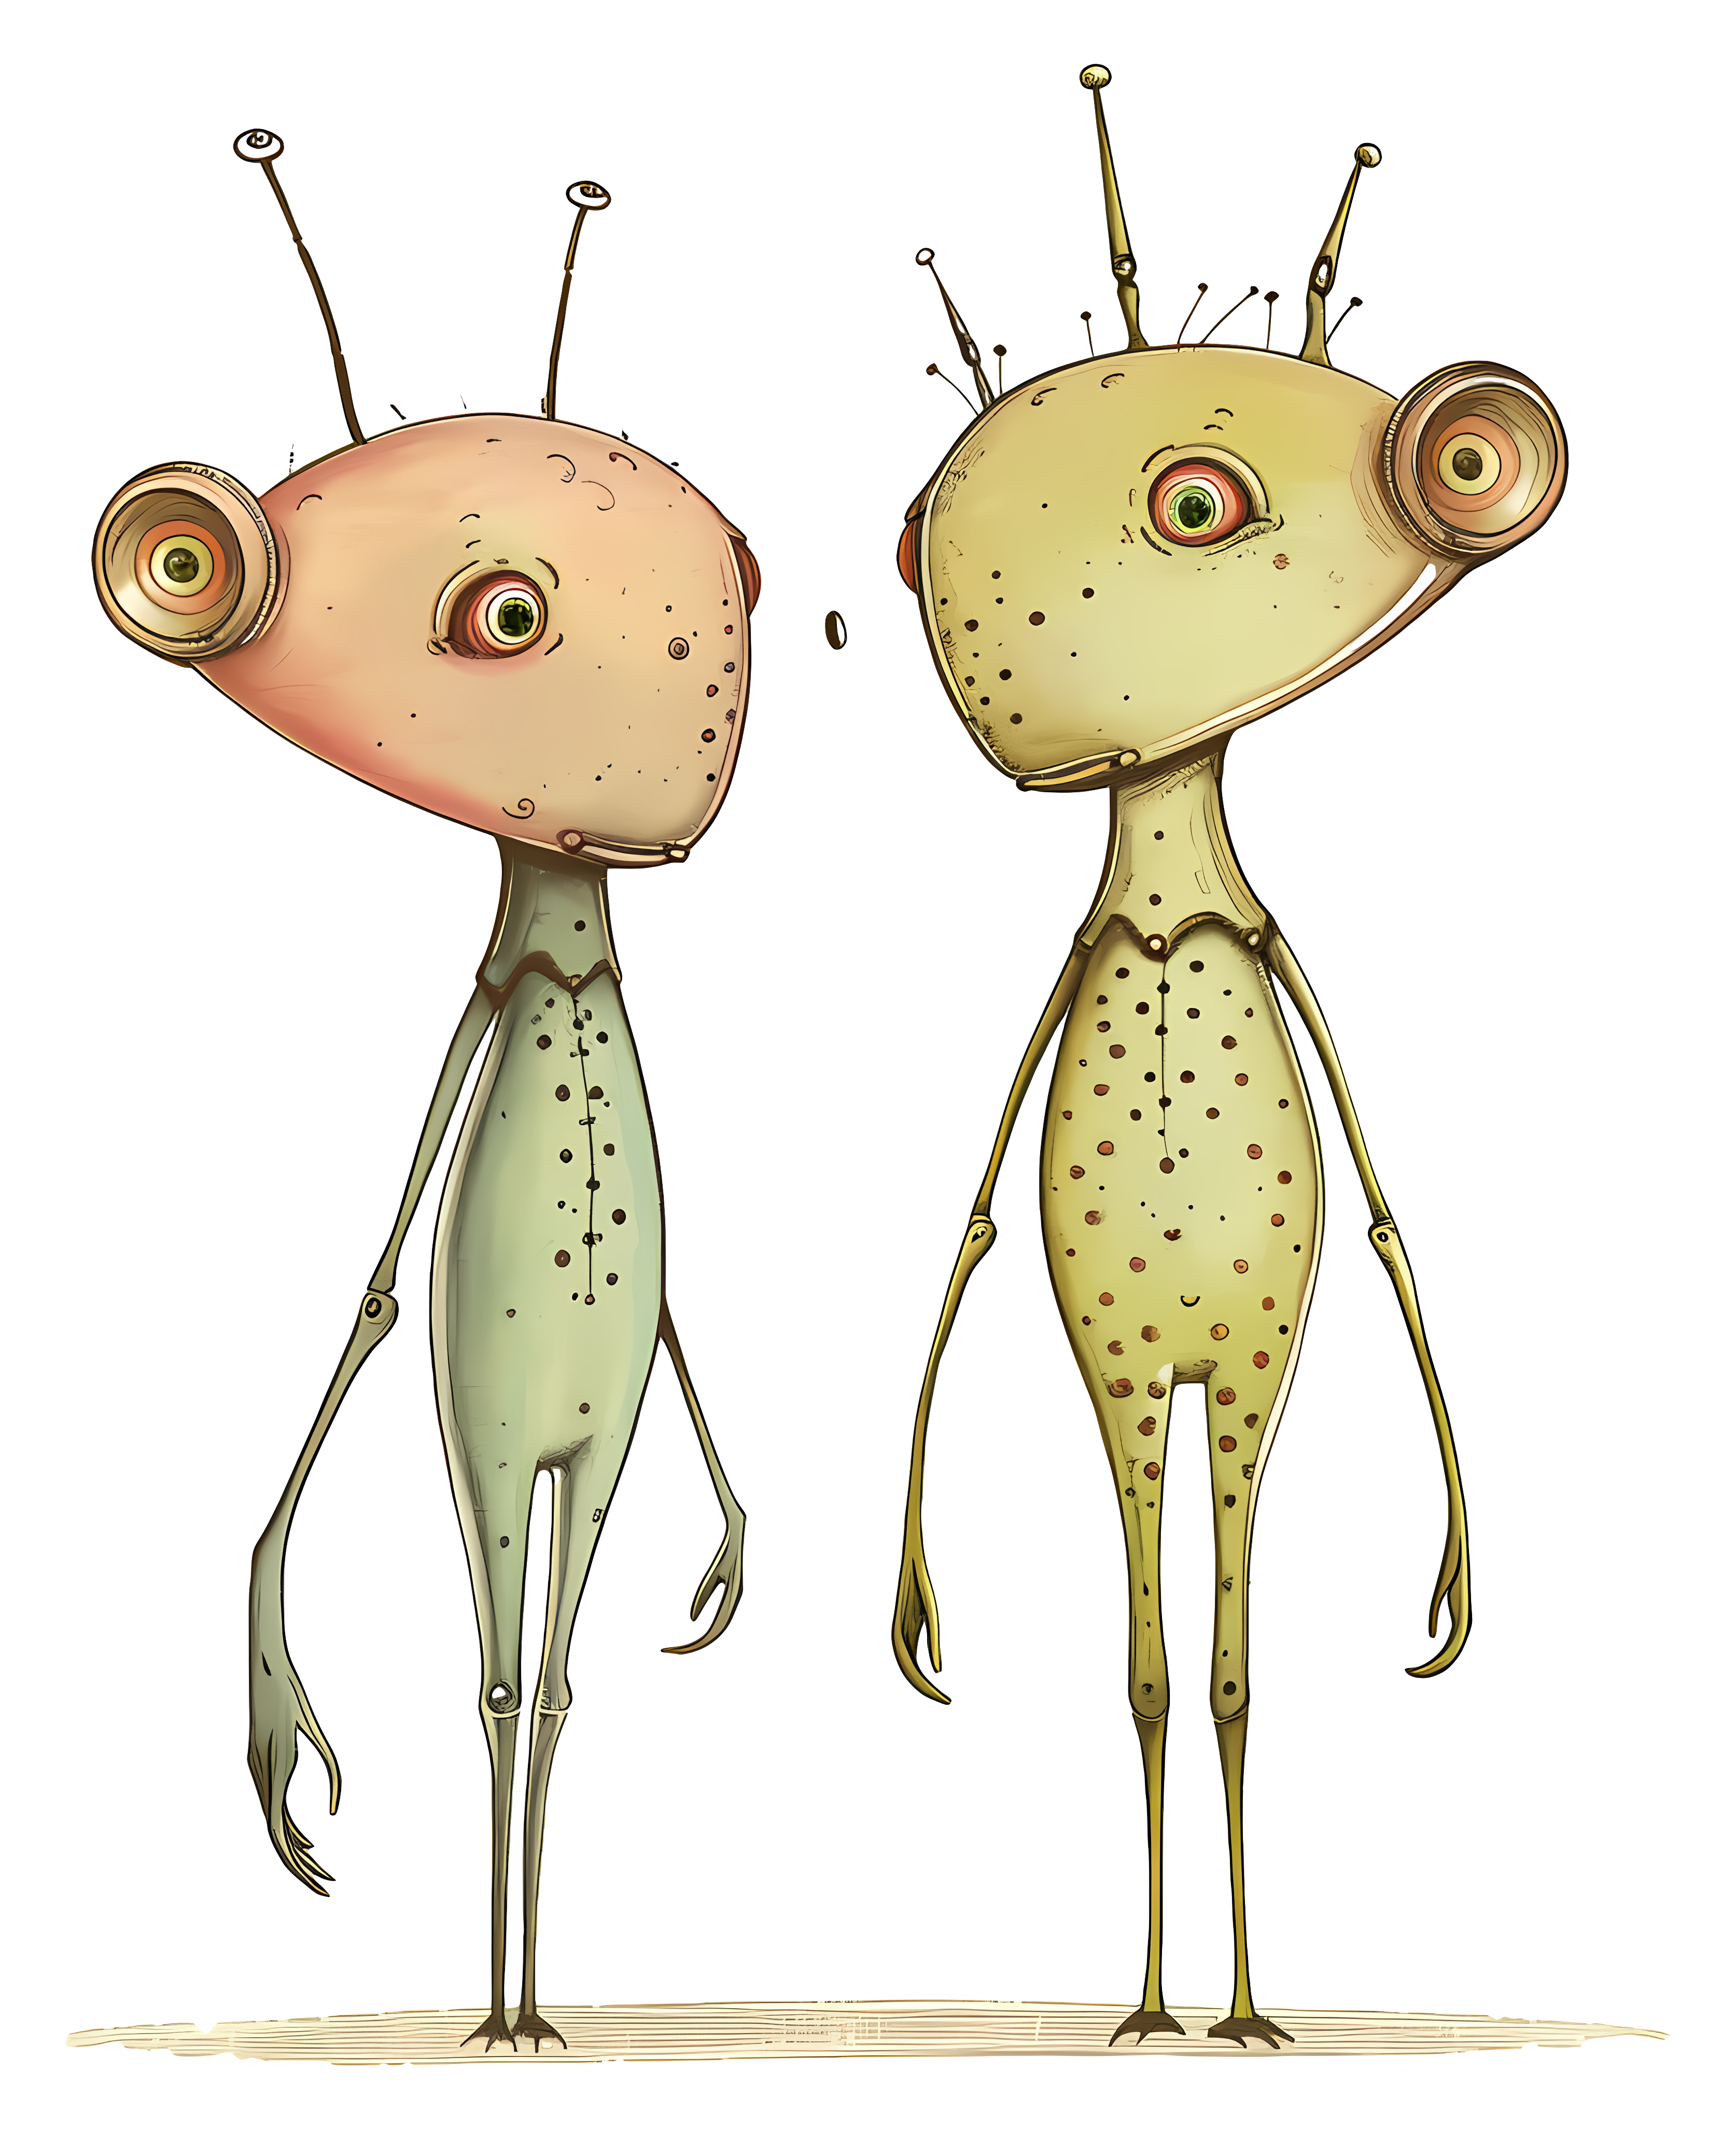 Two strange alien creatures with unique features Clipart